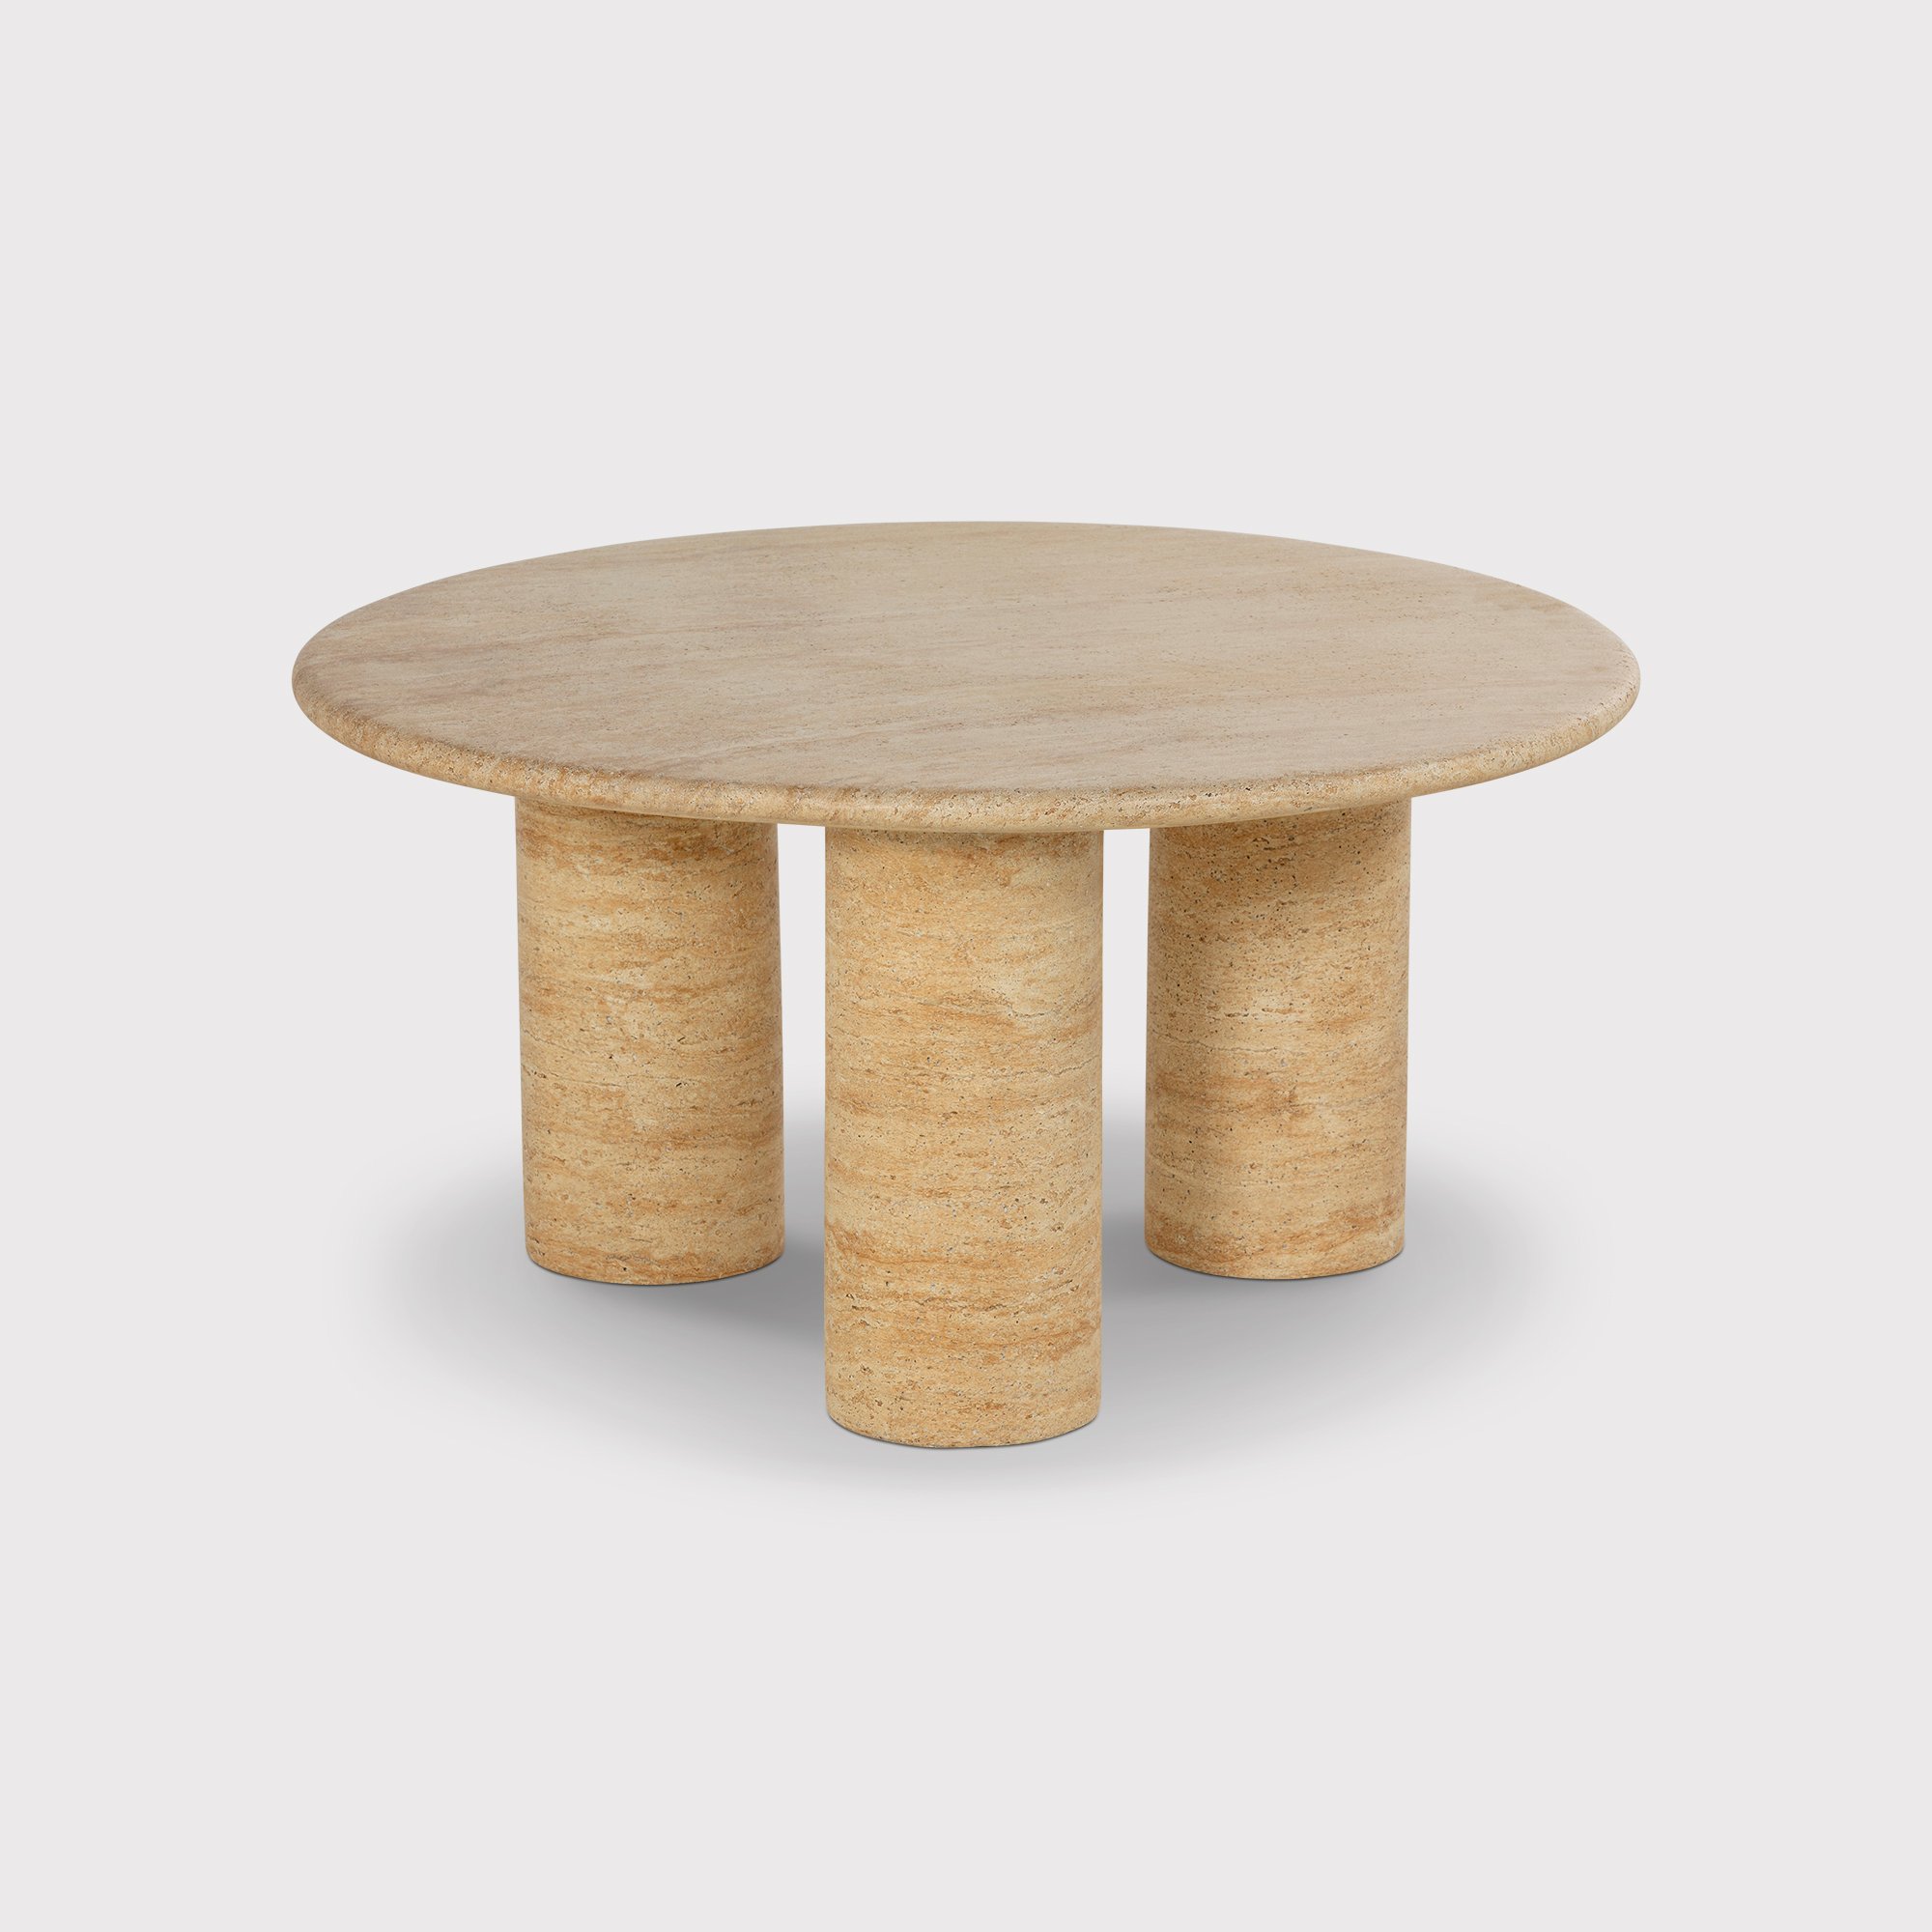 Sierra Round Coffee Table 80cm X 80cm X 41cm, Round, Neutral | Barker & Stonehouse